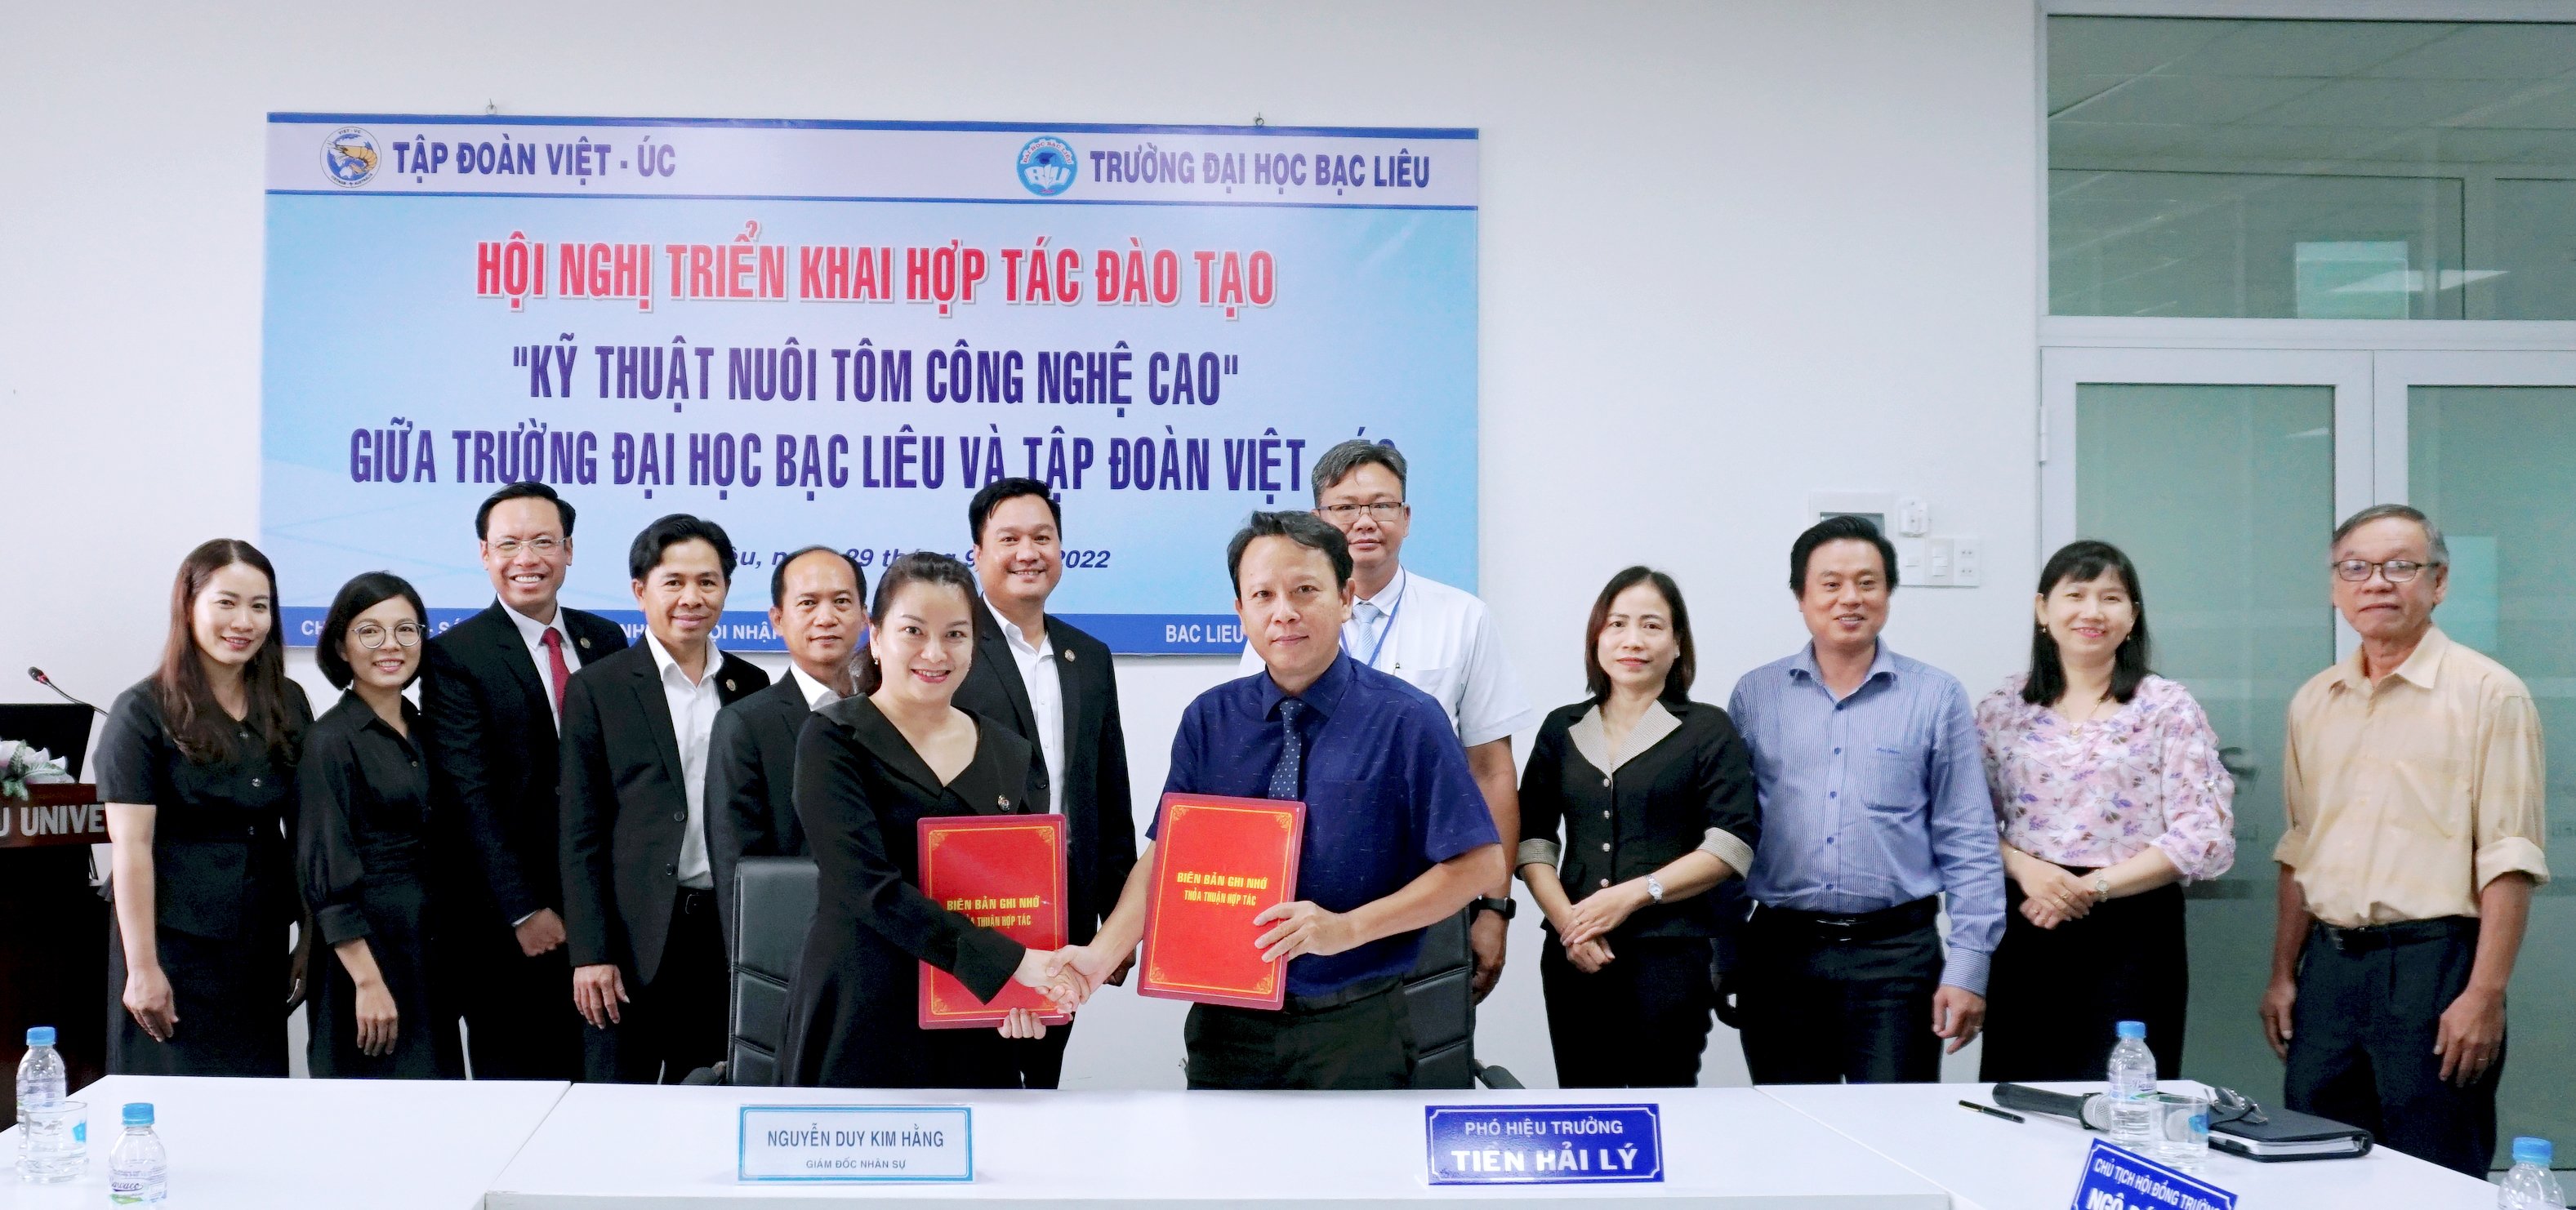 Hội nghị triển khai Hợp tác đào tạo “Kỹ thuật nuôi tôm công nghệ cao” giữa Trường Đại học Bạc Liêu và Tập đoàn Việt – Úc